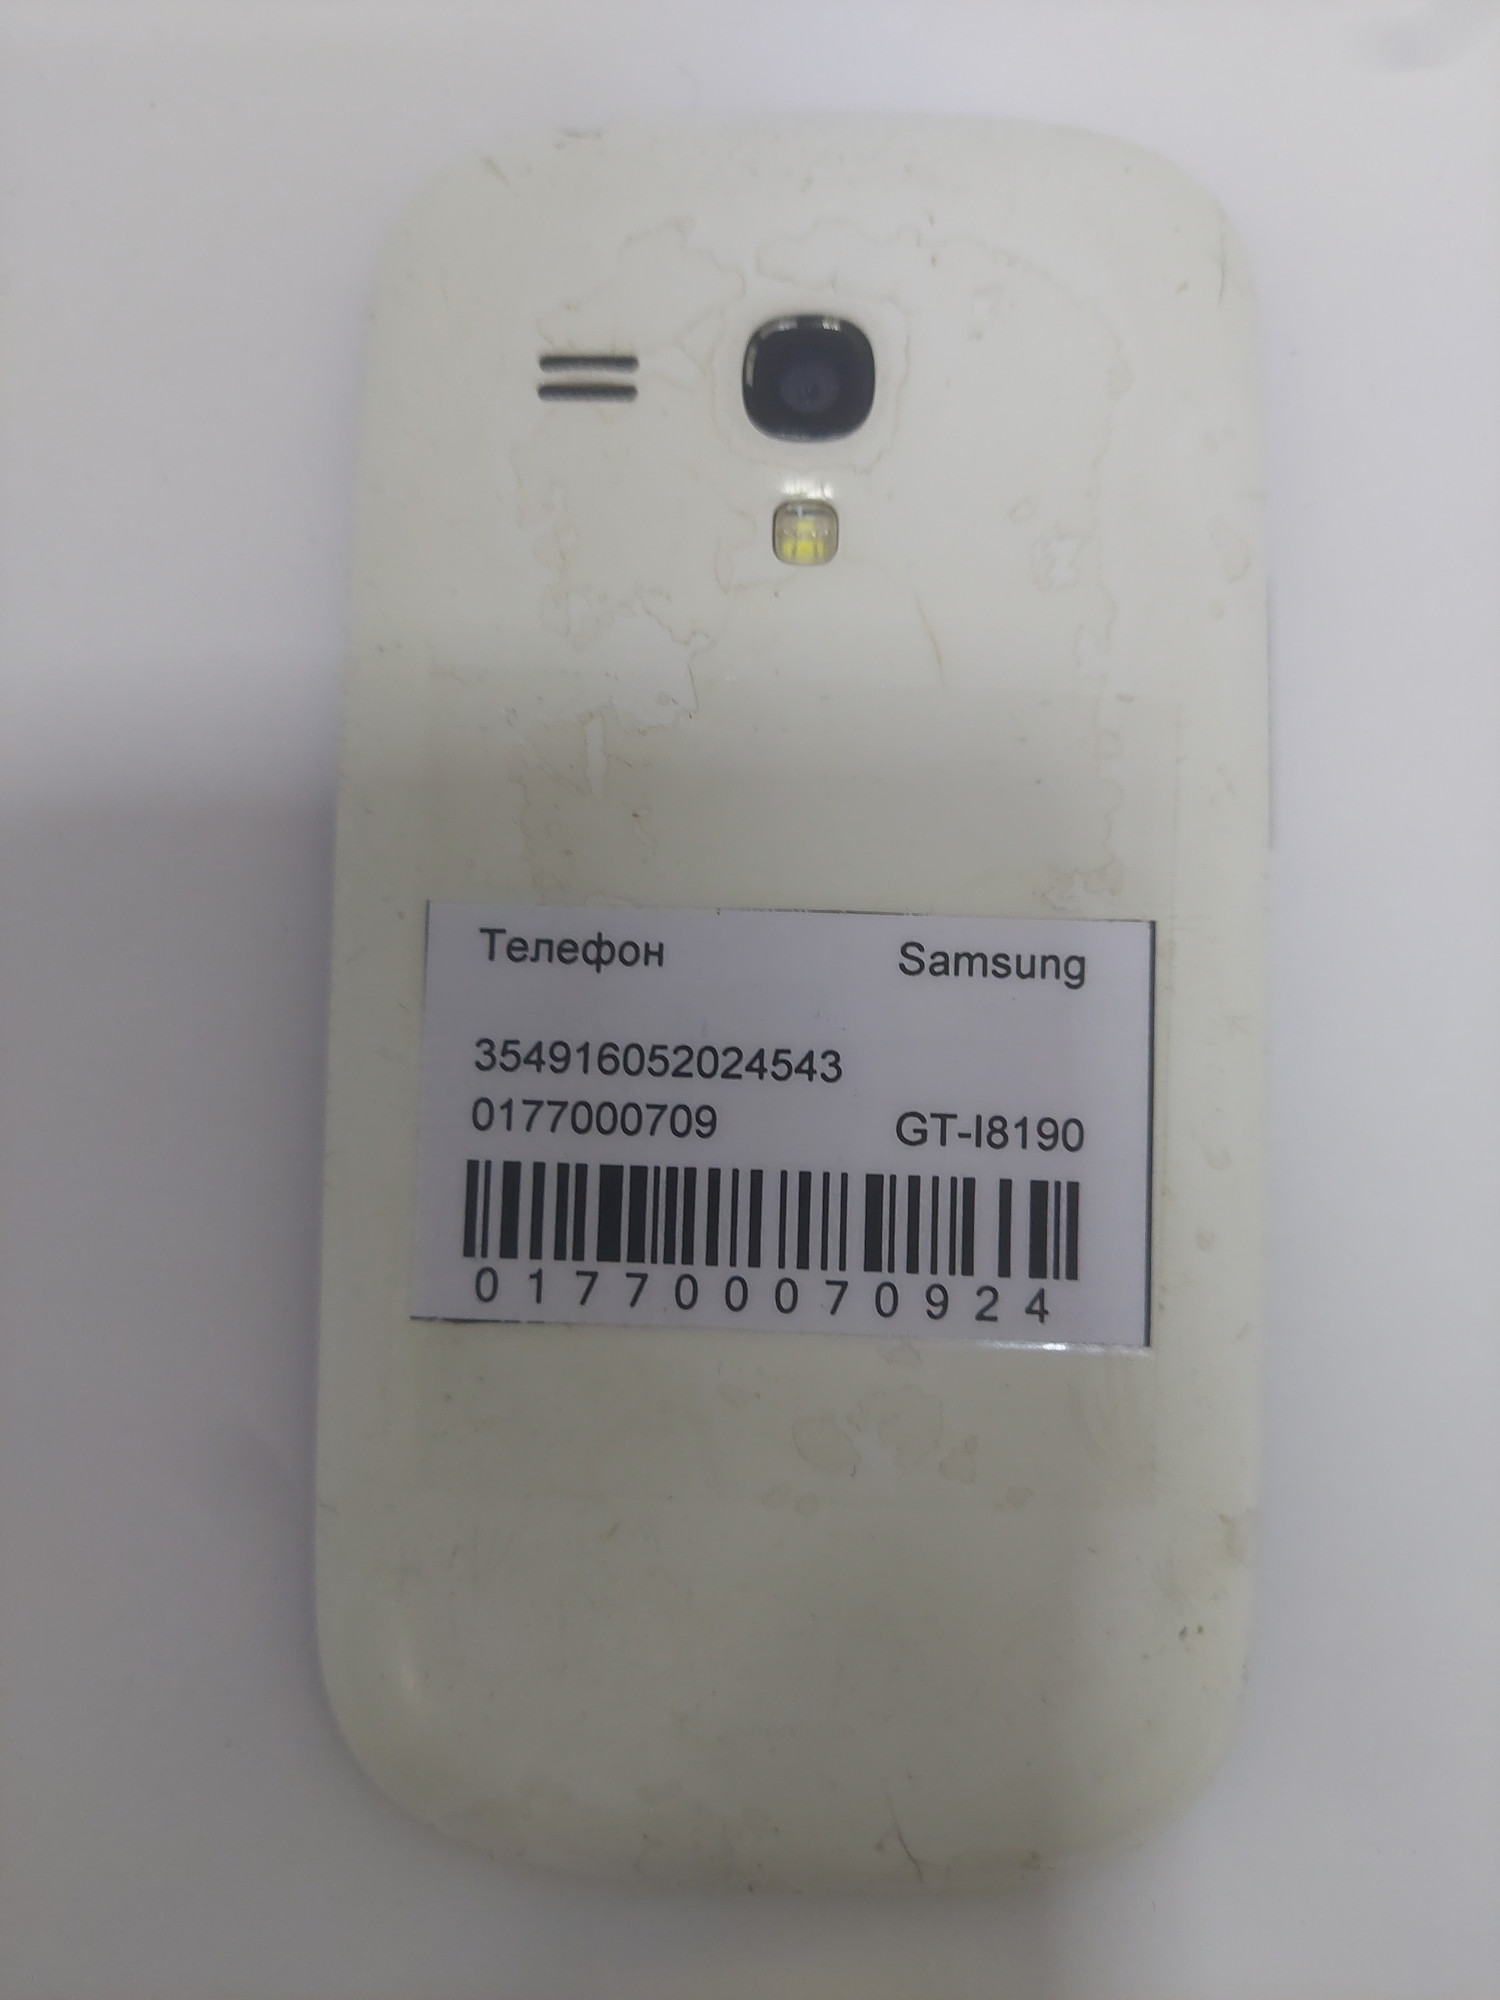 Samsung Galaxy S III mini (GT-I8190) 1/16Gb 1